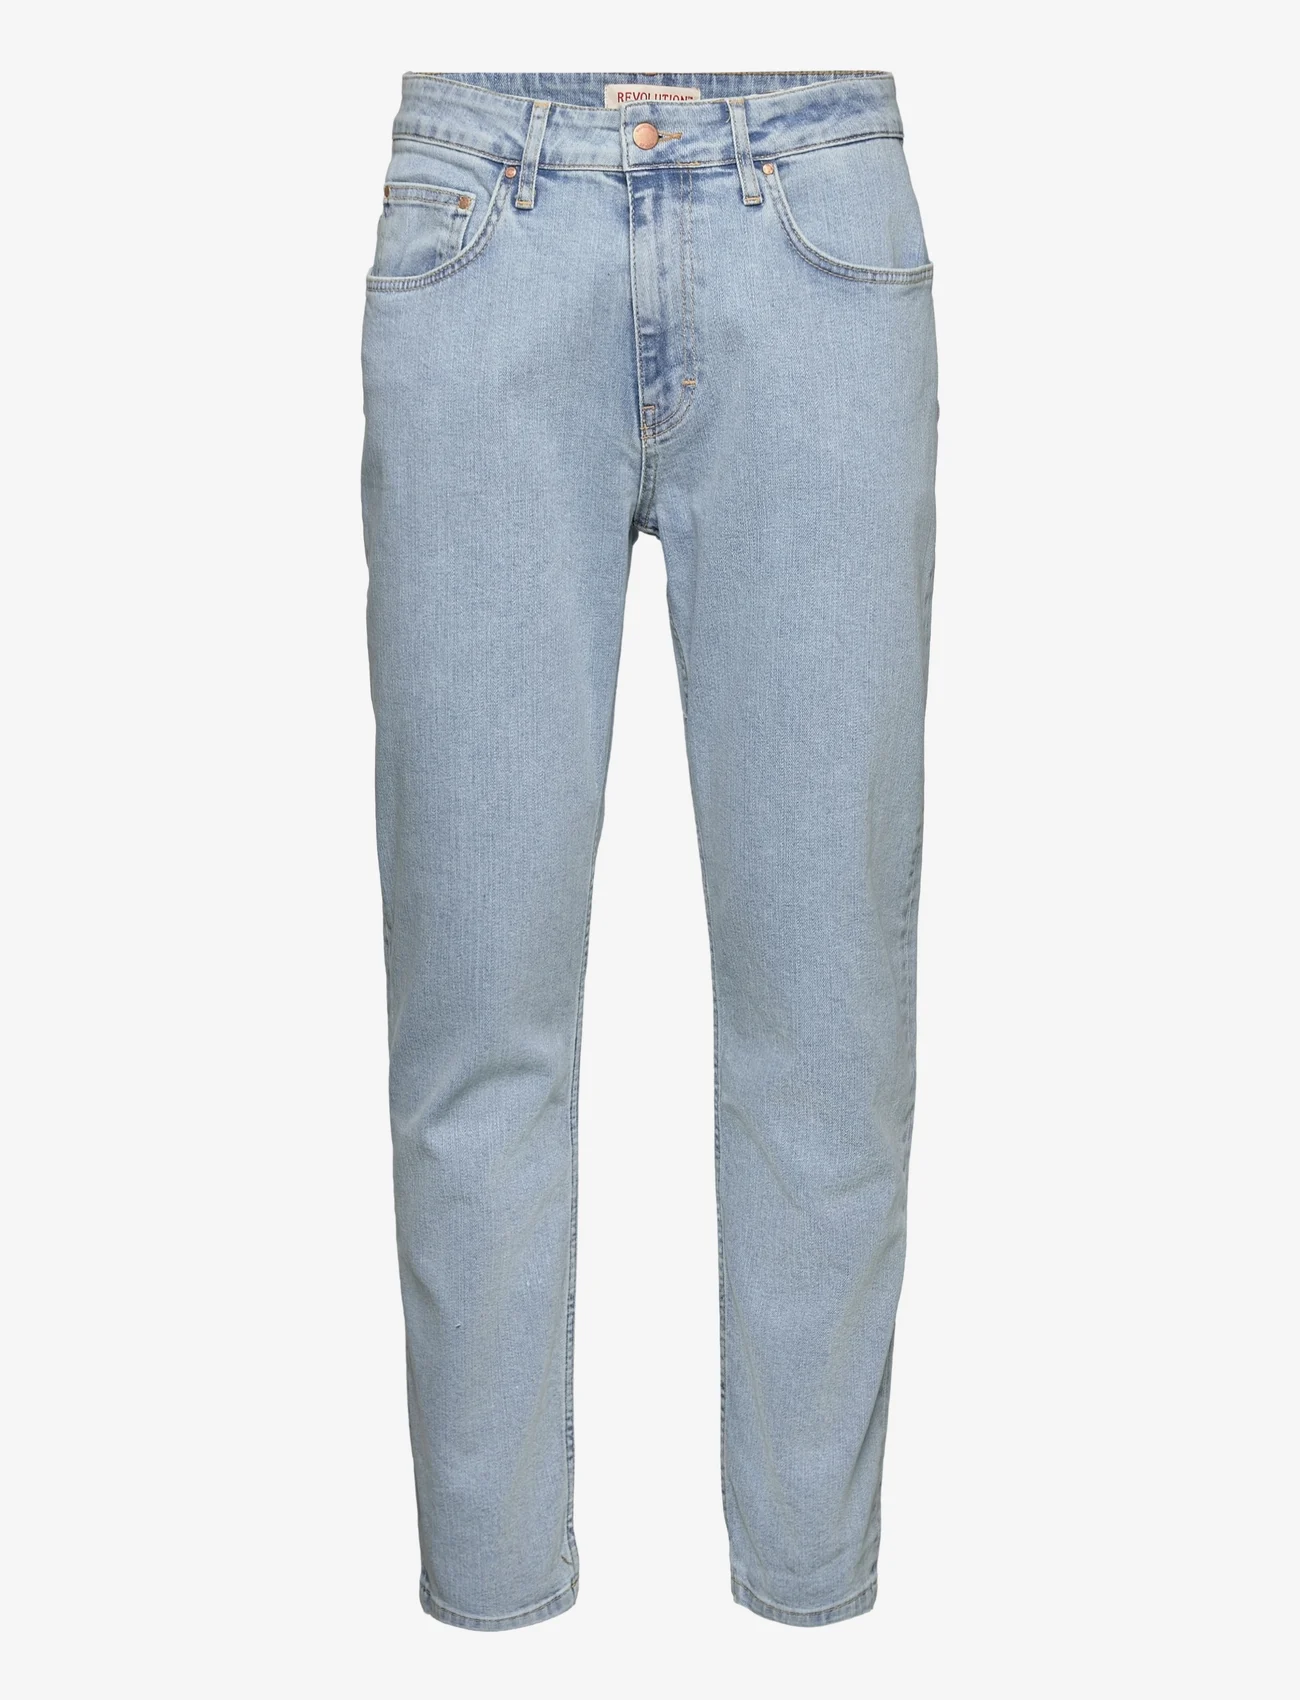 Revolution - Loose-fit Jeans - laisvo kirpimo džinsai - blue - 0